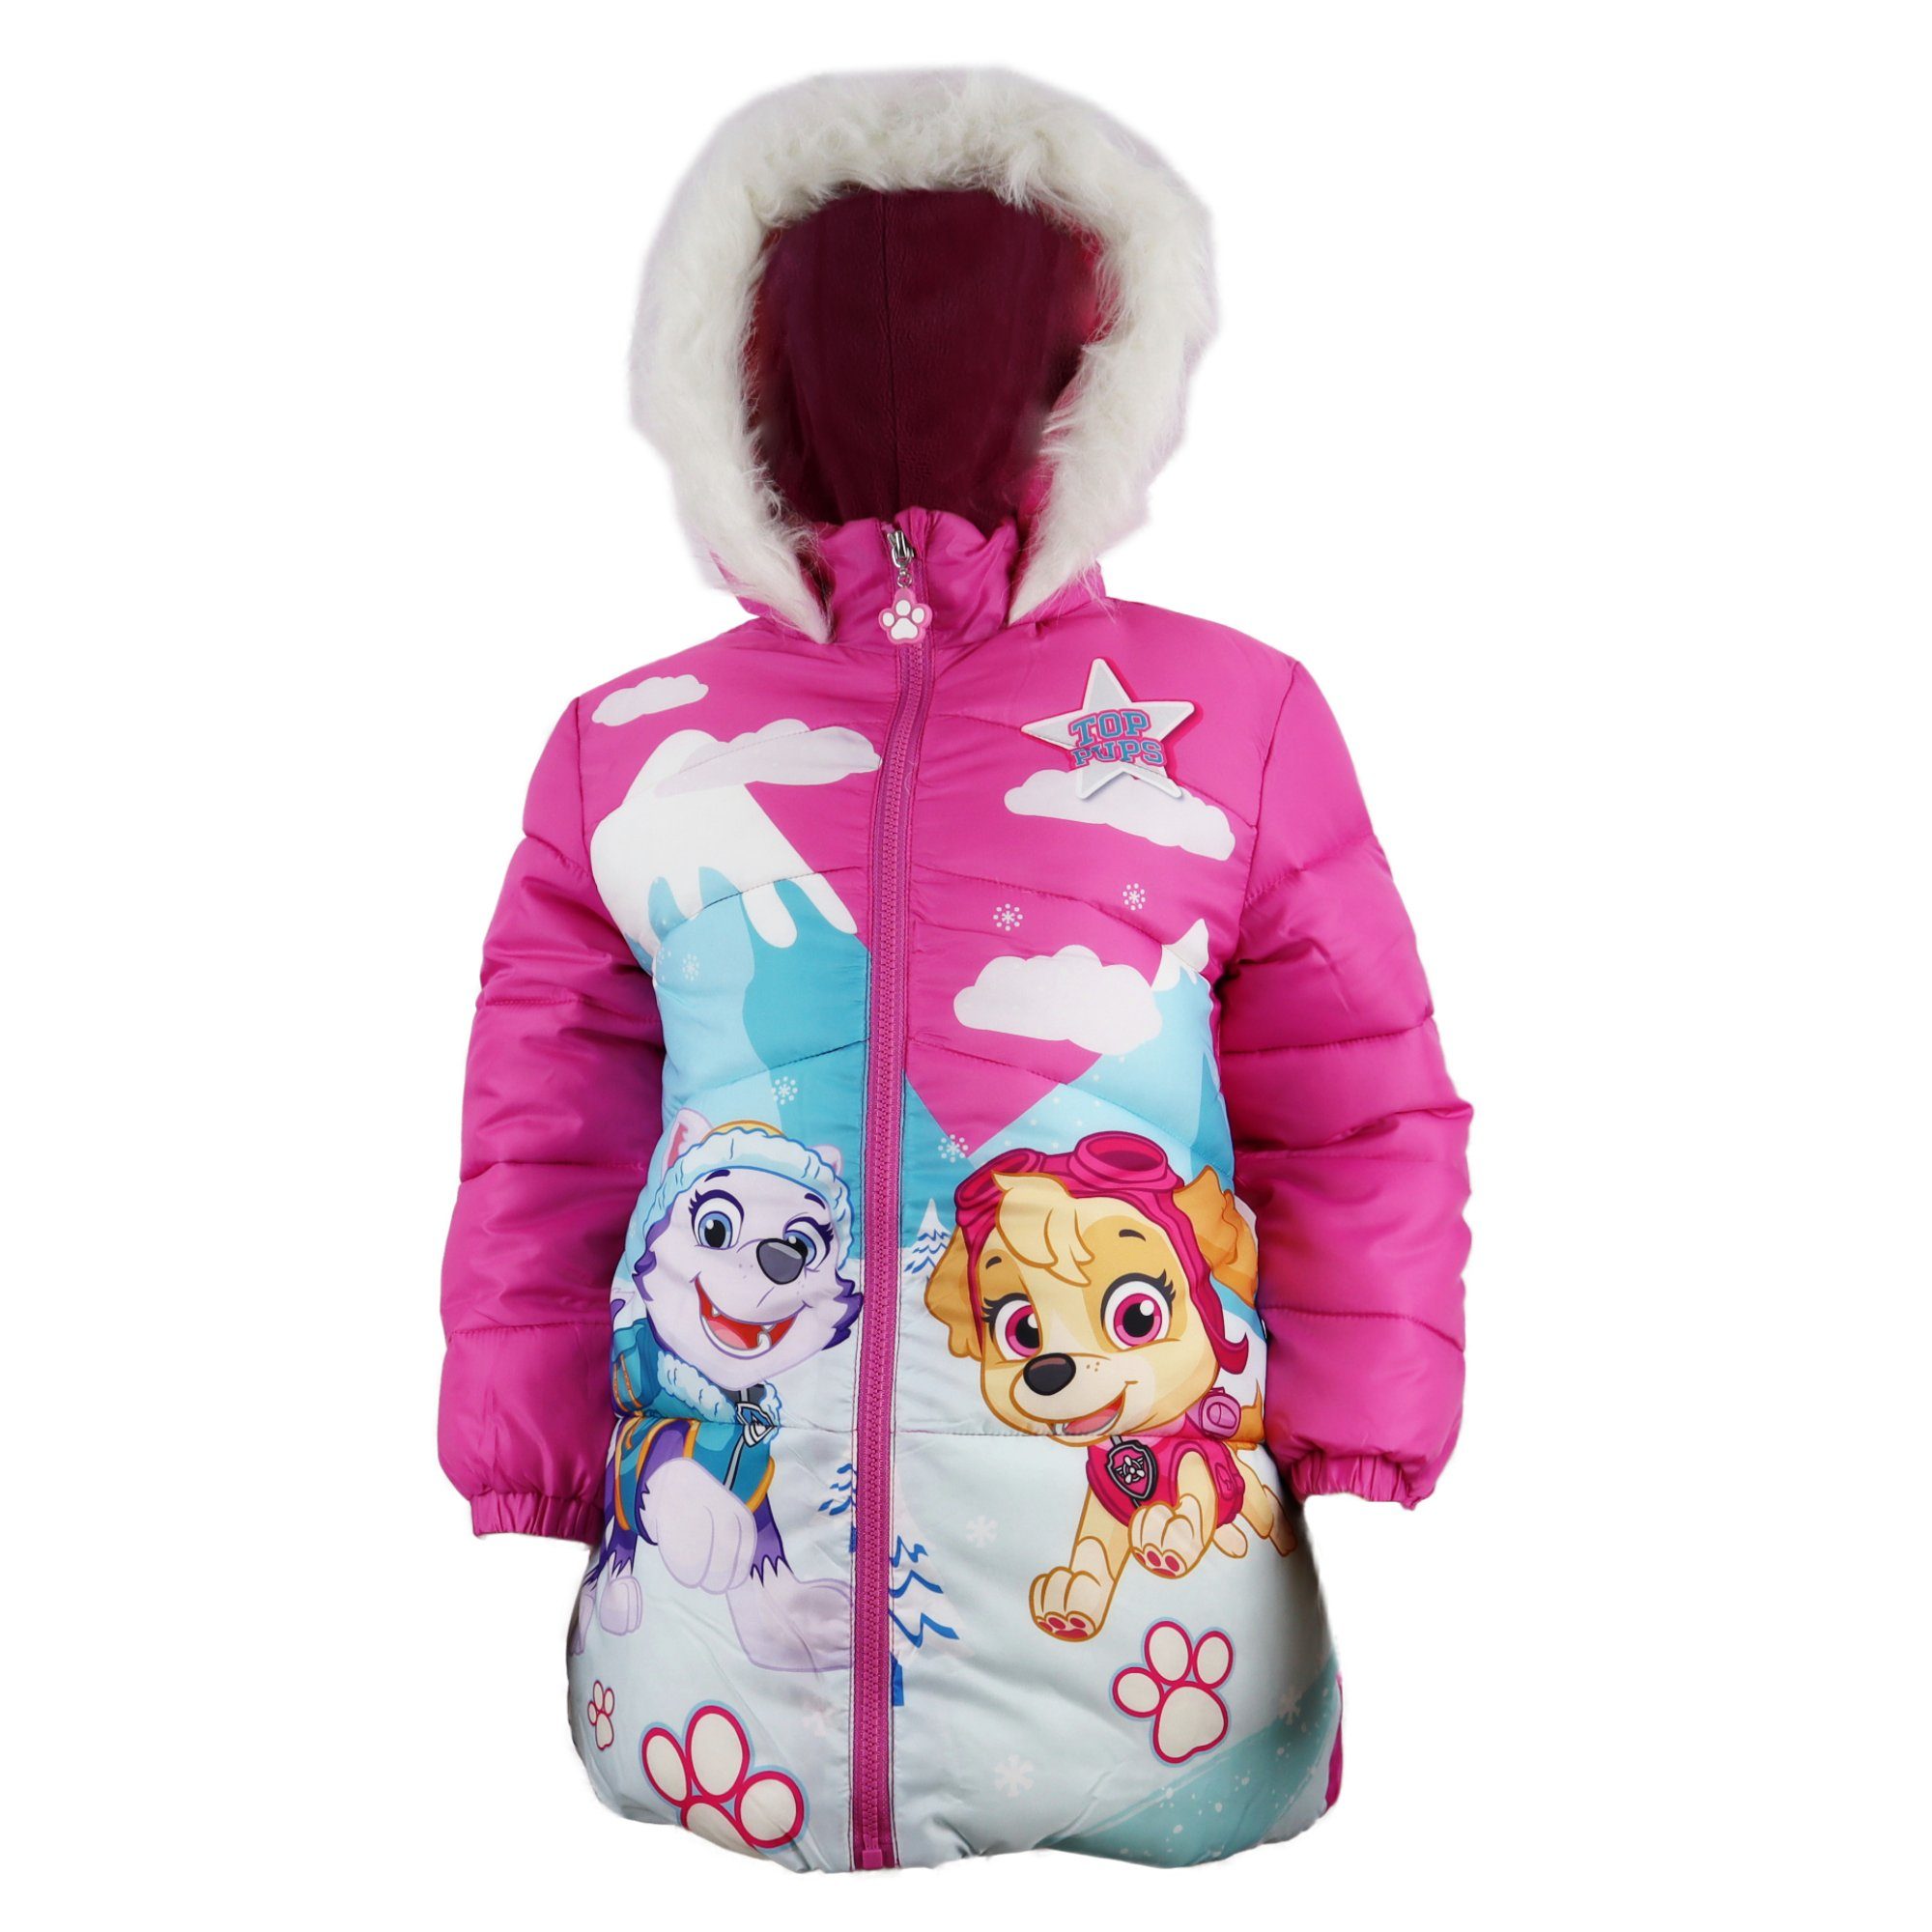 PAW PATROL Winterjacke »Skye Everest Kinder Jacke« Gr. 98 bis 128, Mit  Kapuze, in Pink oder Rosa online kaufen | OTTO